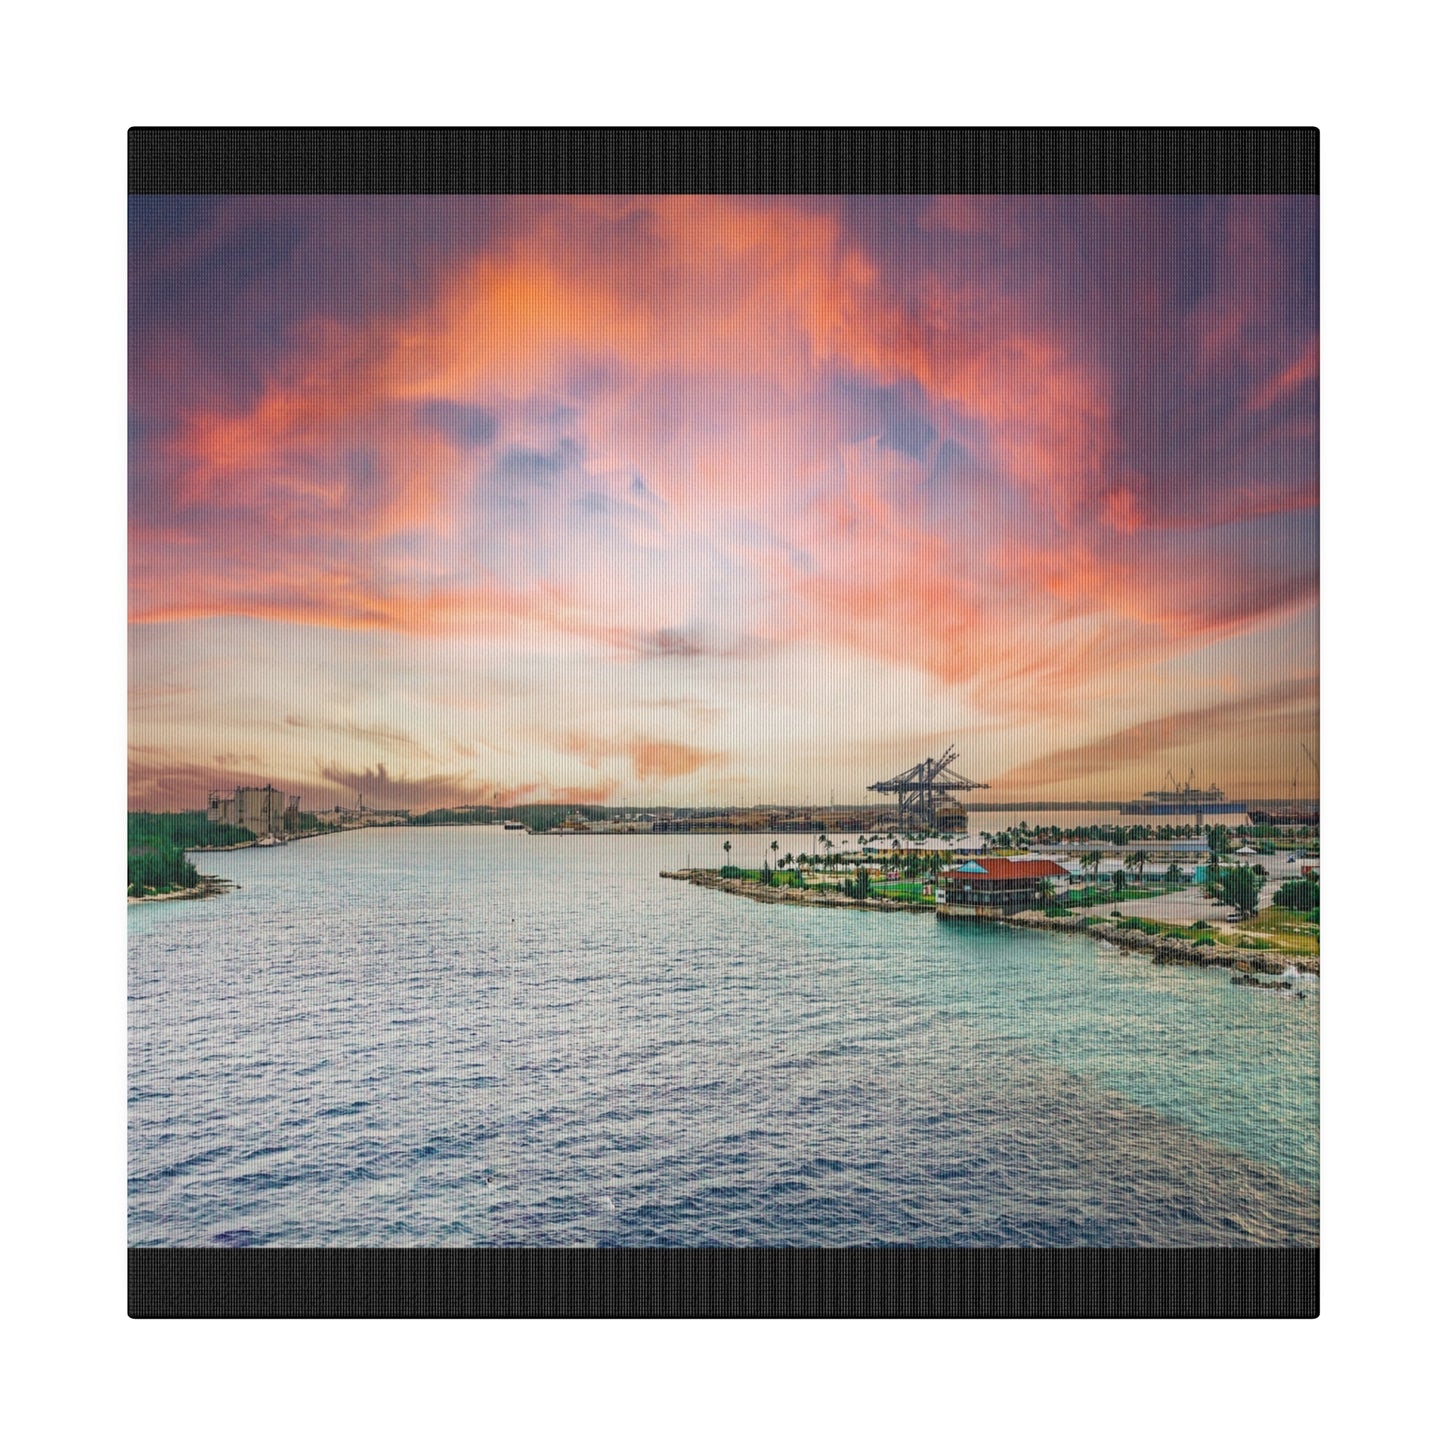 Sunrise over Freeport Bahamas